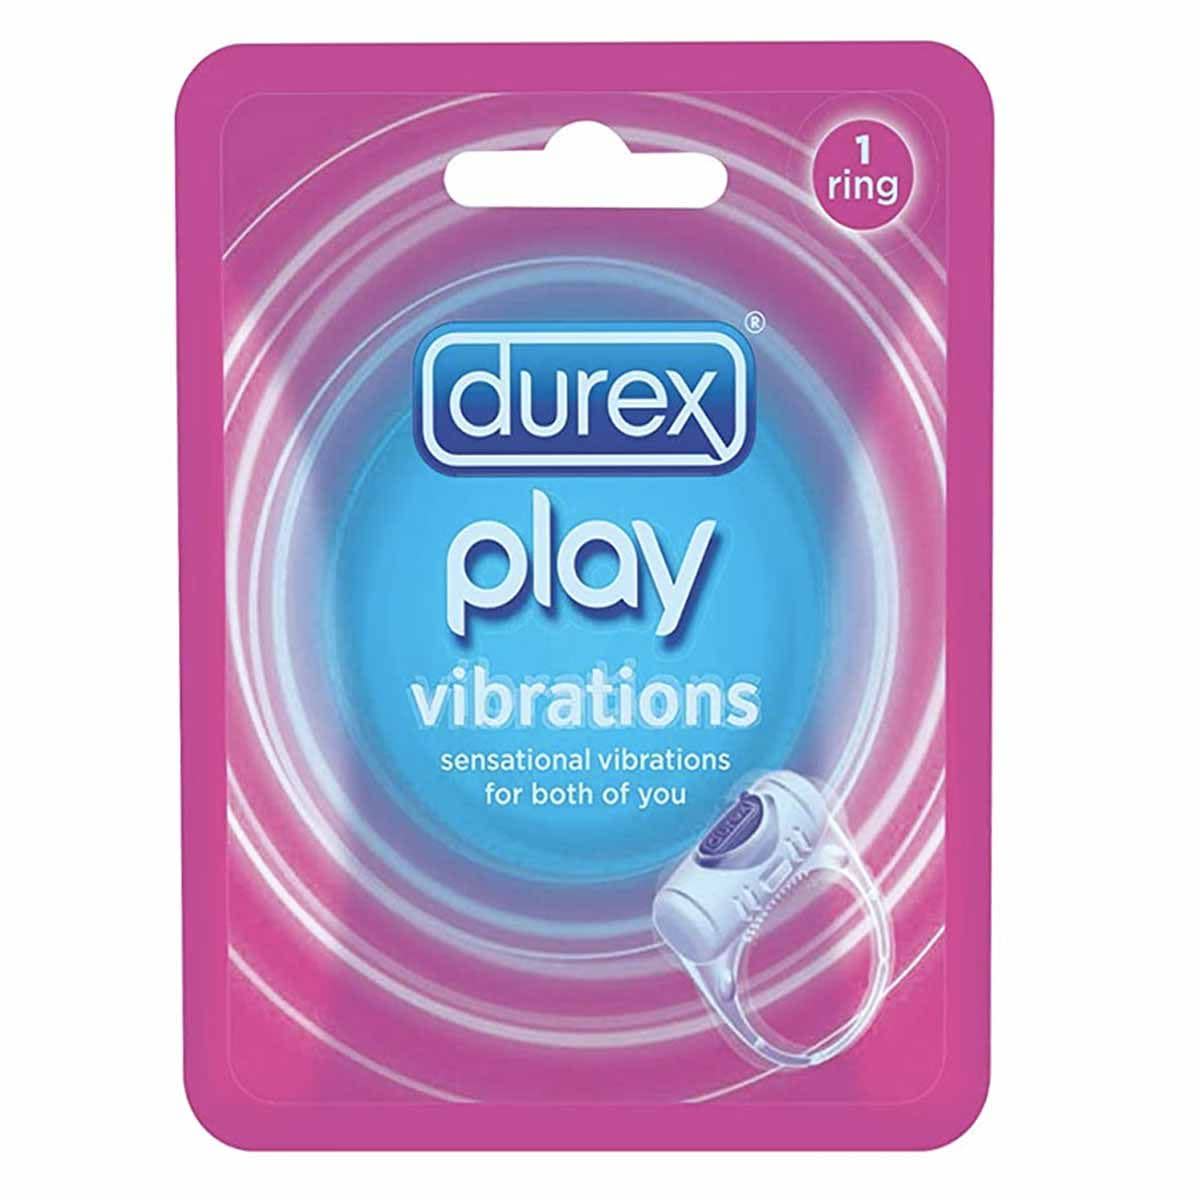 972536371 - Durex Play Vibration Gen 3 Italy anello stimolante - 7888183_2.jpg